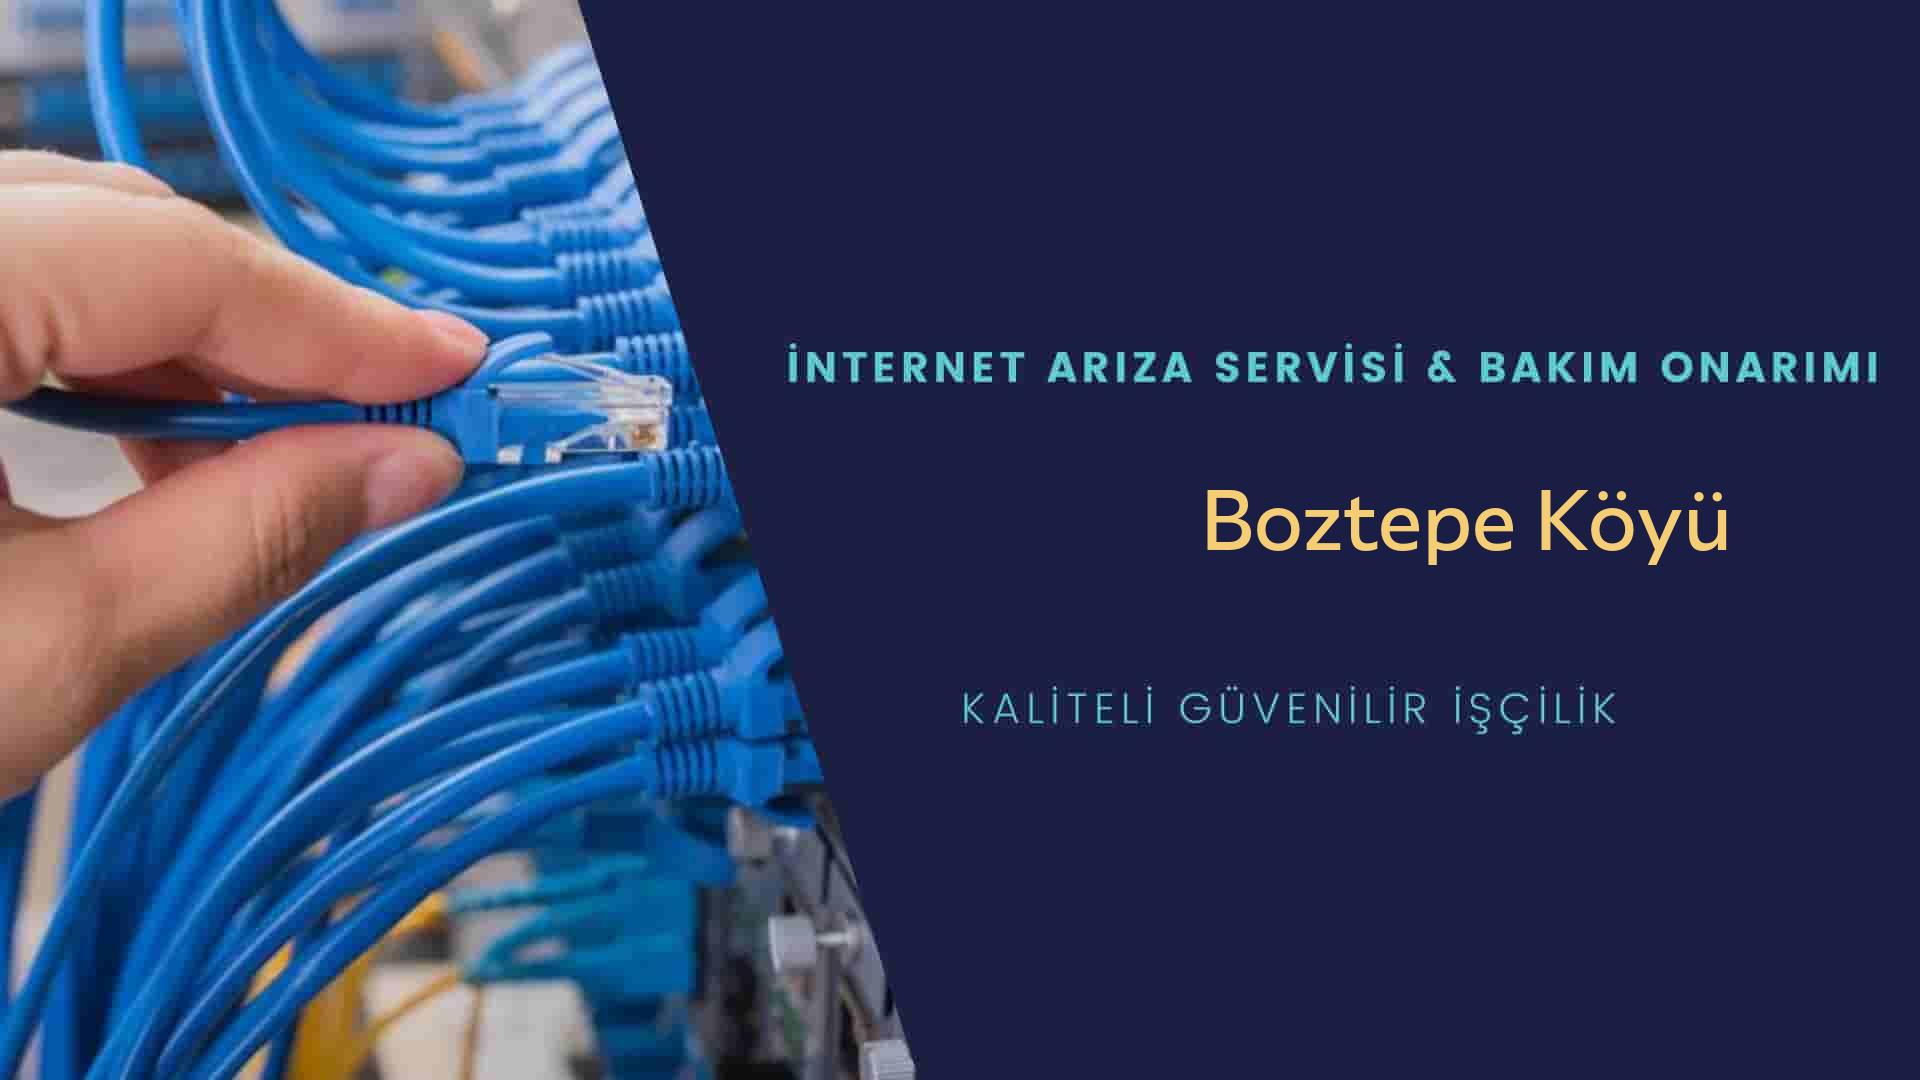 Boztepe Köyü internet kablosu çekimi yapan yerler veya elektrikçiler mi? arıyorsunuz doğru yerdesiniz o zaman sizlere 7/24 yardımcı olacak profesyonel ustalarımız bir telefon kadar yakındır size.